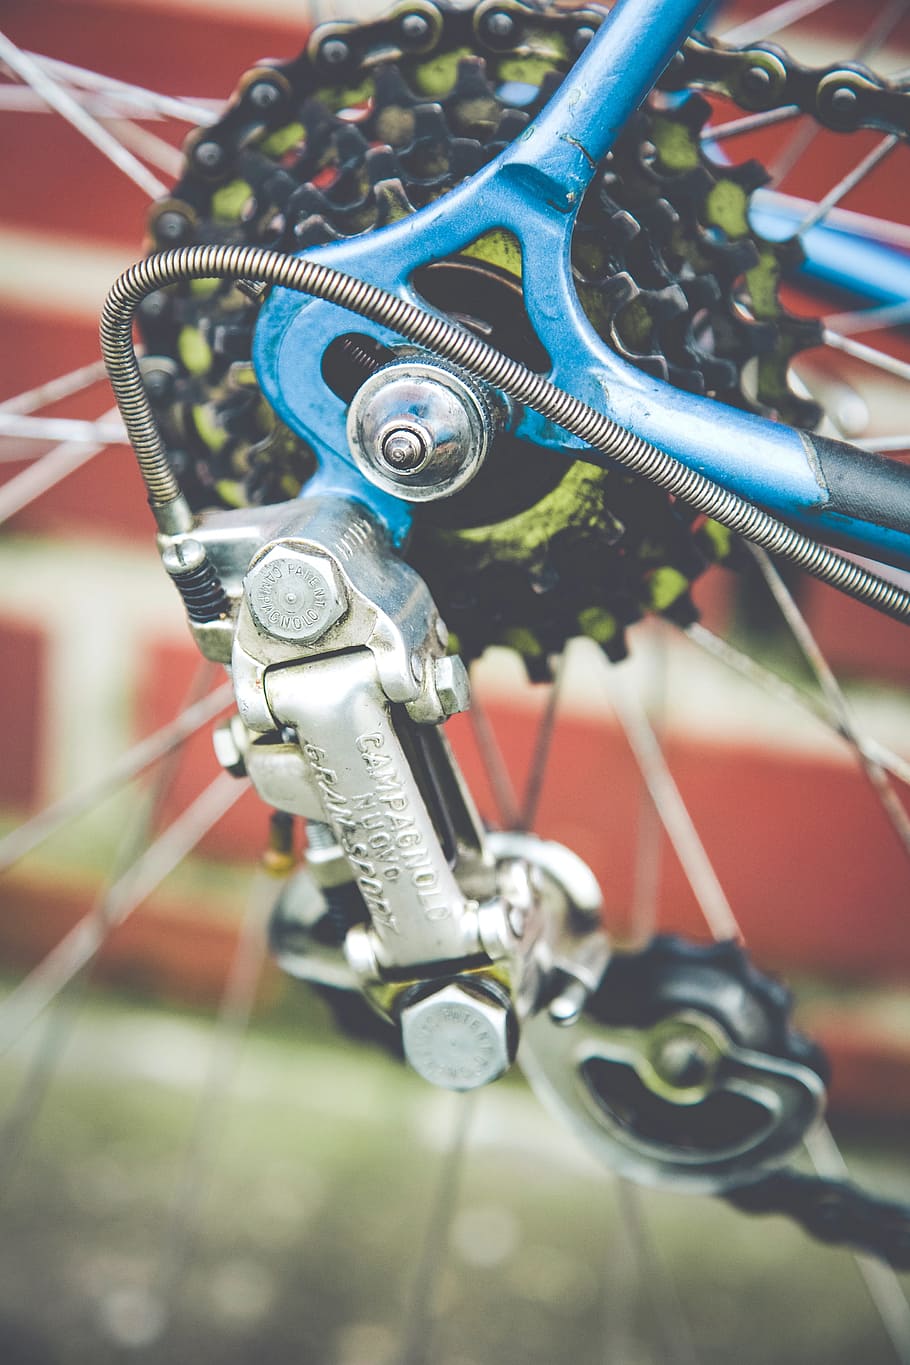 bicicleta, corrente, metal, ninguém, close-up, foco em primeiro plano, dia, foco seletivo, ao ar livre, tecnologia